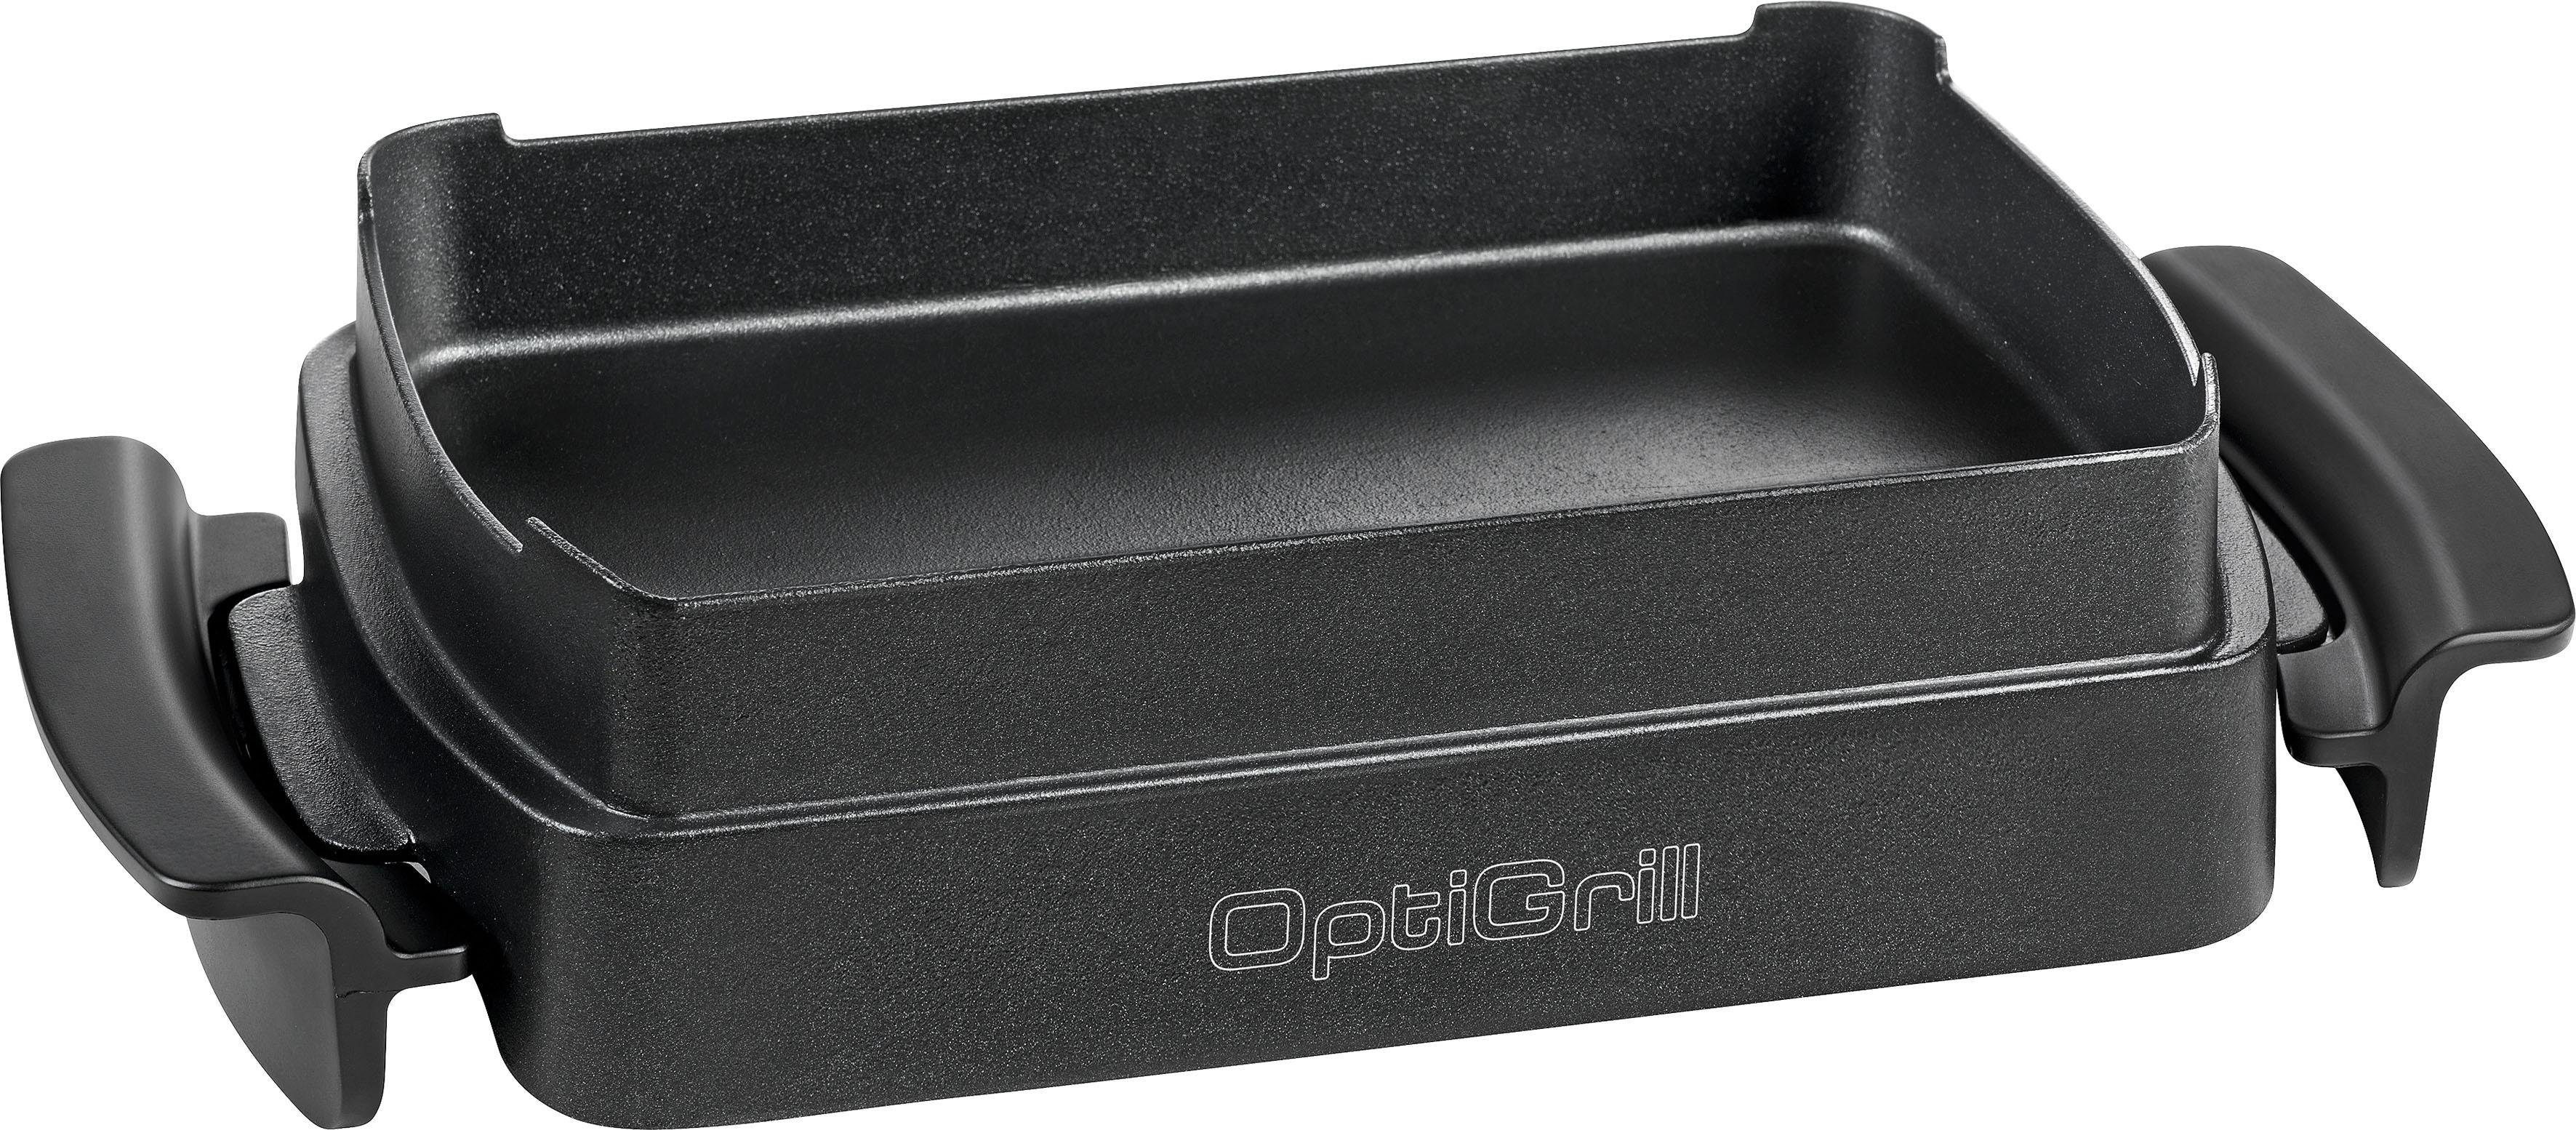 Tefal Backeinsatz XA7258 Snacking & Baking für den OptiGrill, Zubehör für  OptiGrill+ und OptiGrill Elite, GC714, GC712, GC730, GC750D, Zubehör  OptiGrill+ und OptiGrill Elite, GC714, GC712, GC730, GC750D, Kompatibel mit  den OptiGrill